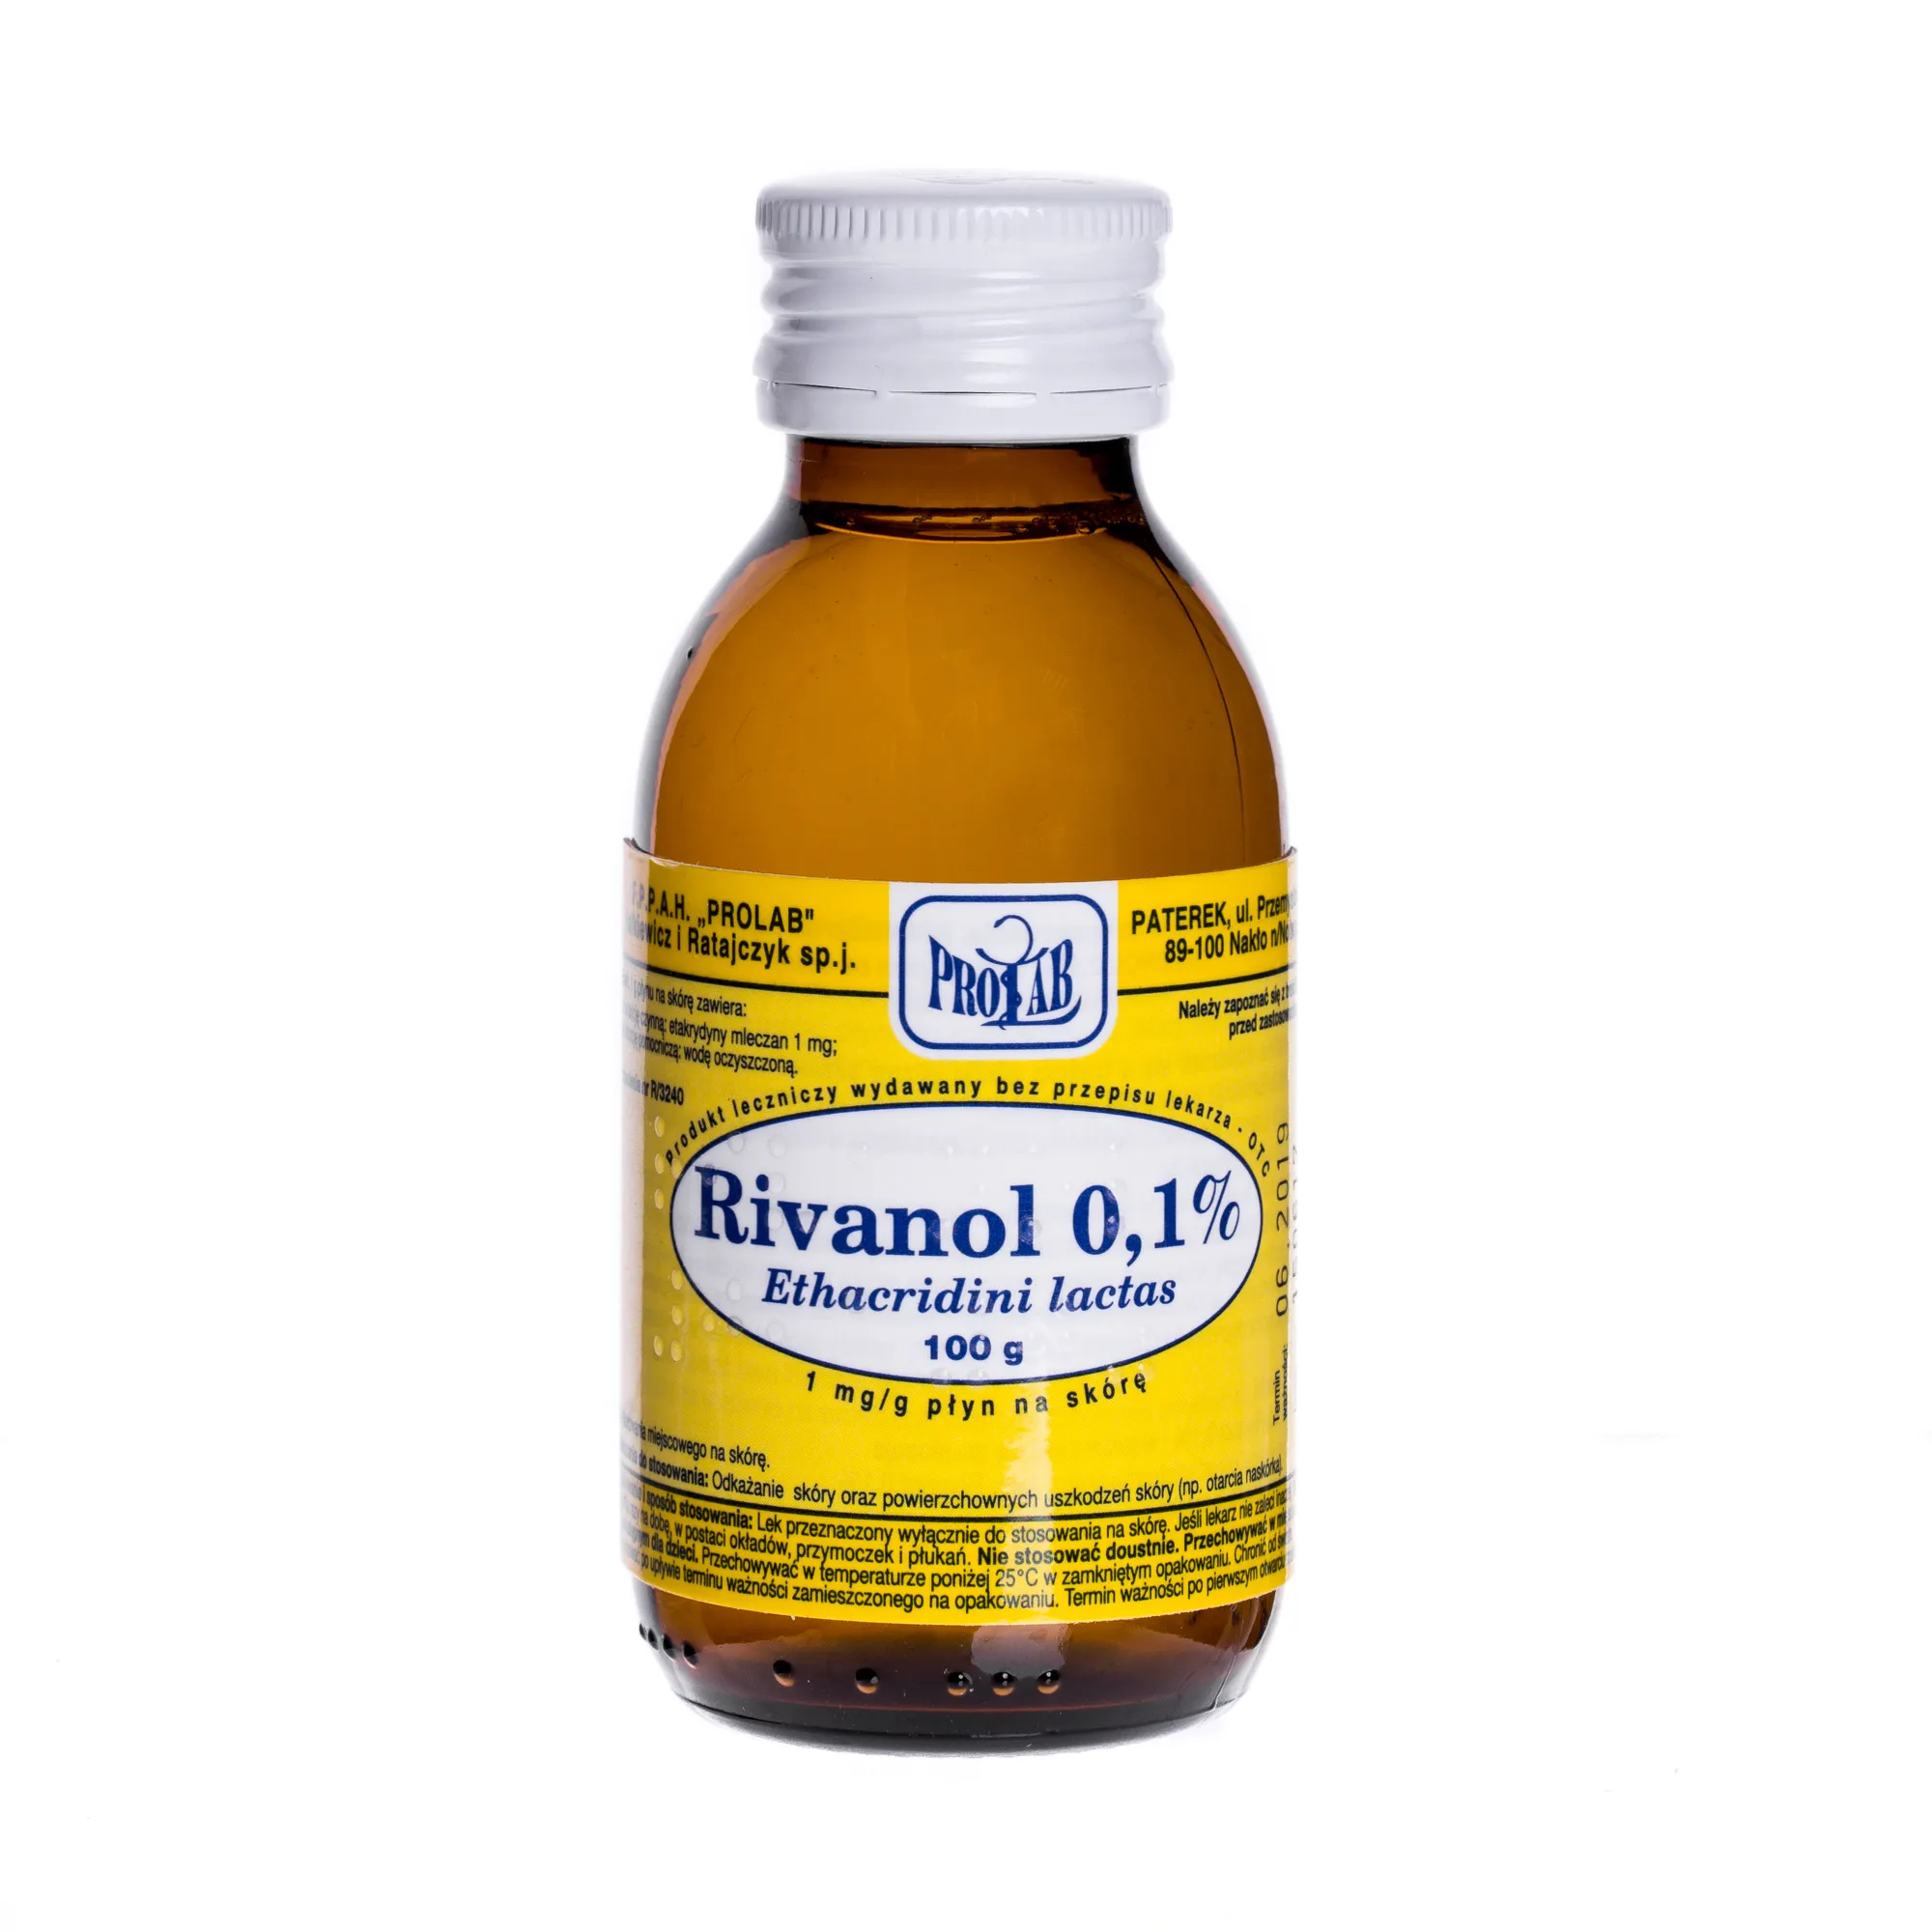 Rivanol 0,1 %, 1 mg/g, płyn na skórę, 100 g